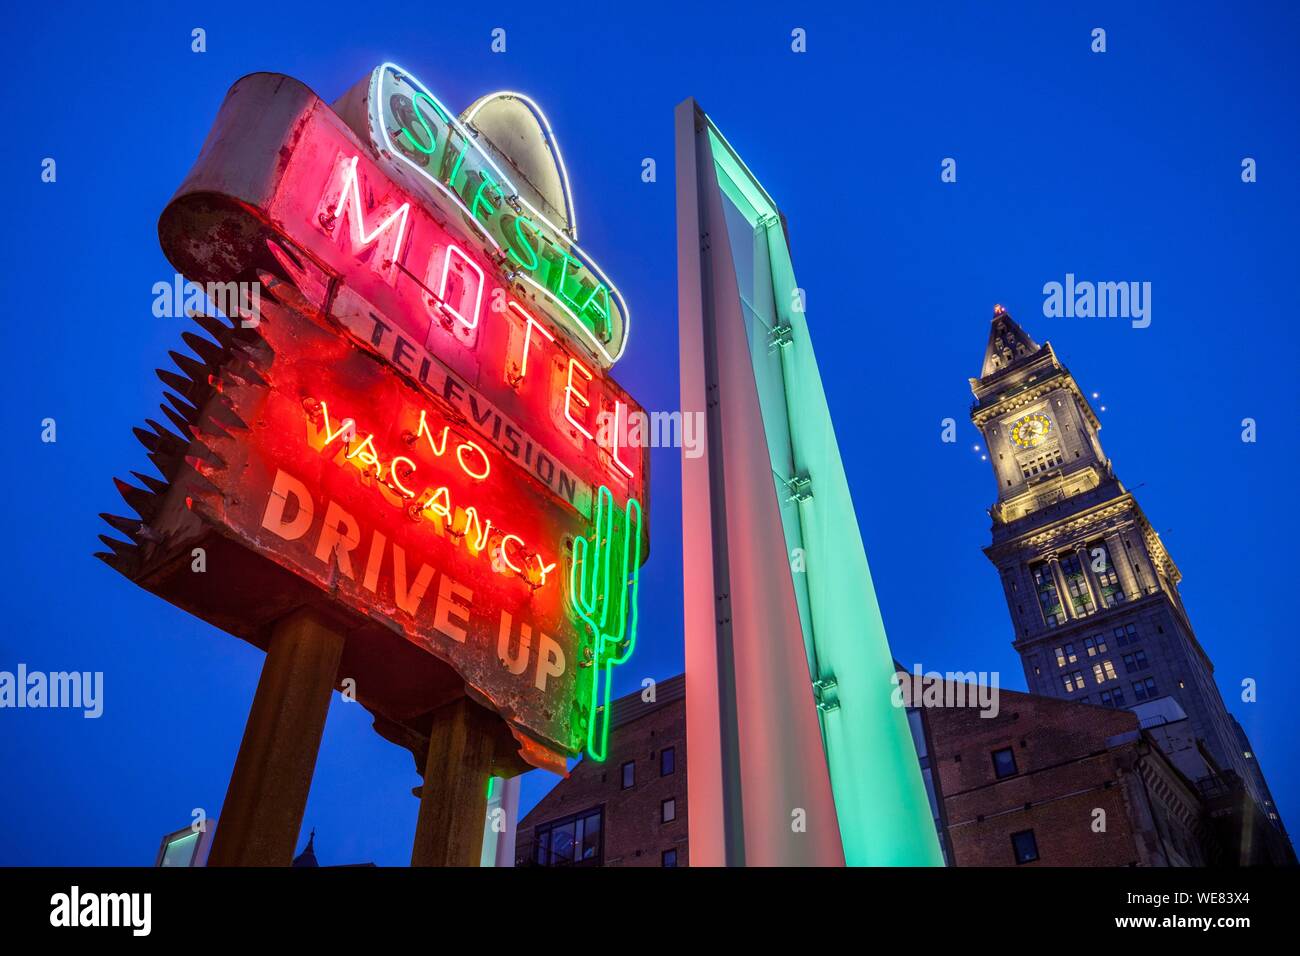 United States, New England, Massachusetts, Boston, meubles anciens néons le long de la Voie verte, au crépuscule Banque D'Images